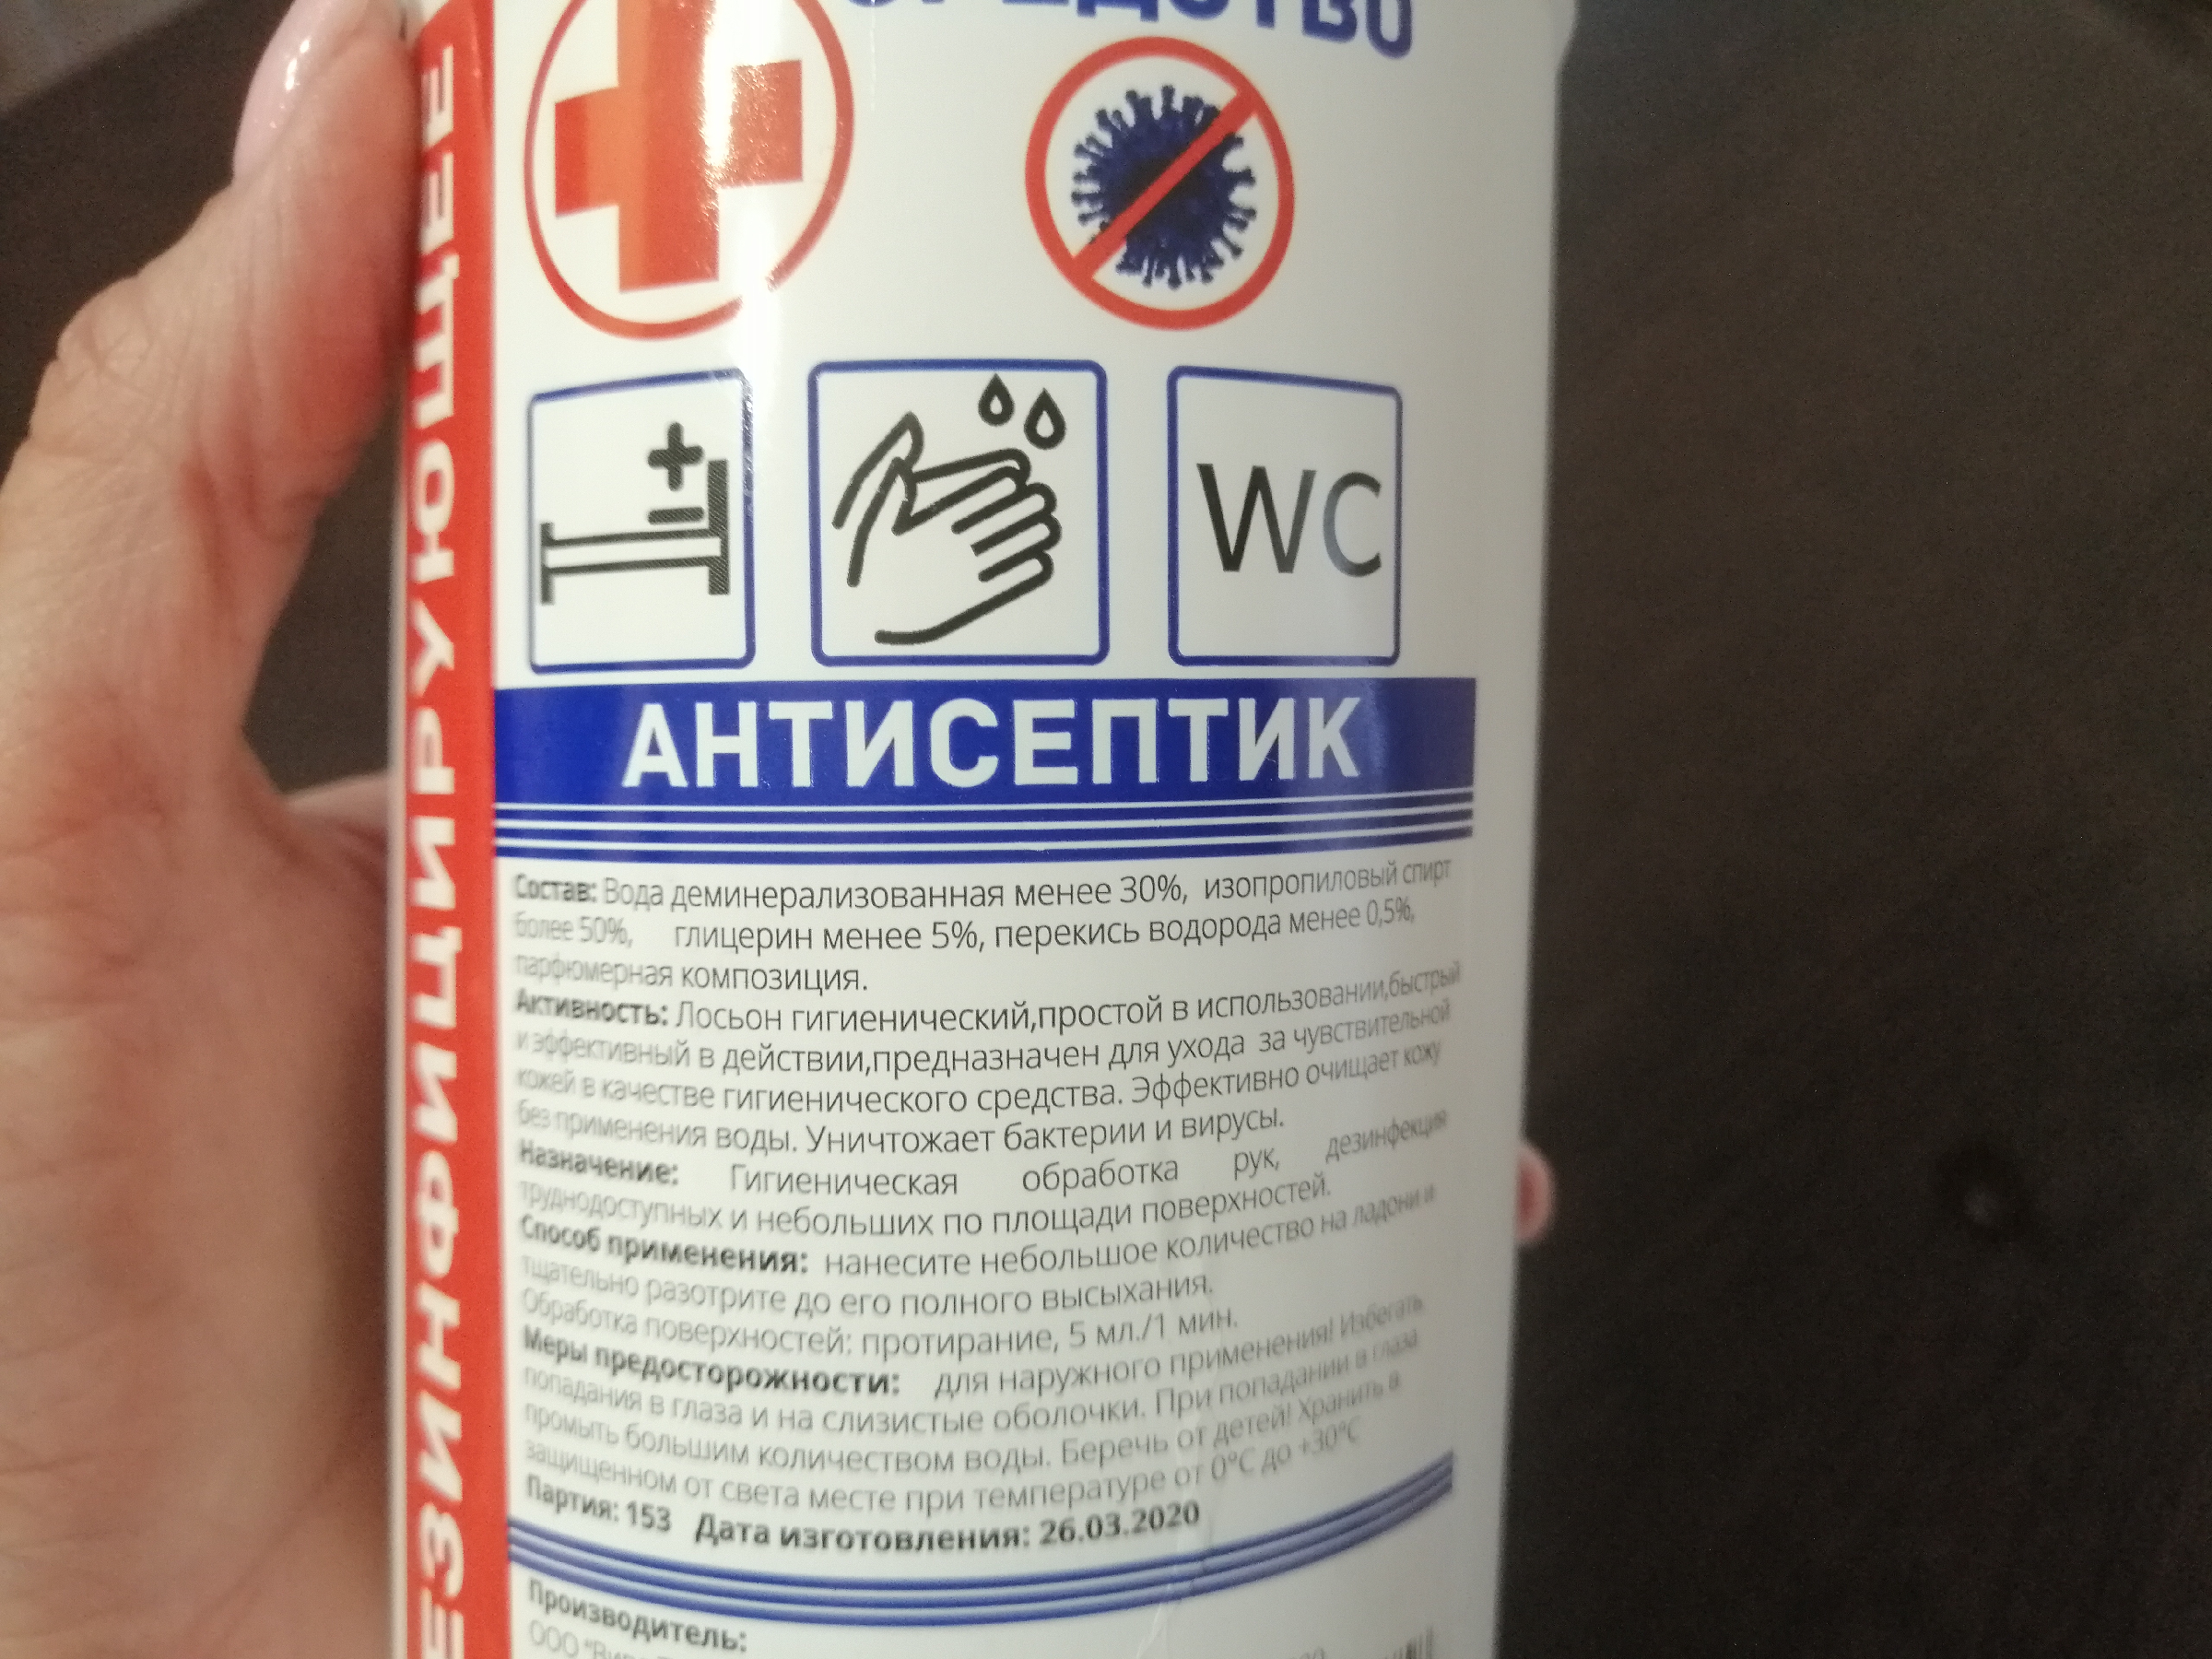 Аптечное советское средство для восстановления кожи рук после огорода. Результат лучше, чем после дорогих кремов (точный состав)3